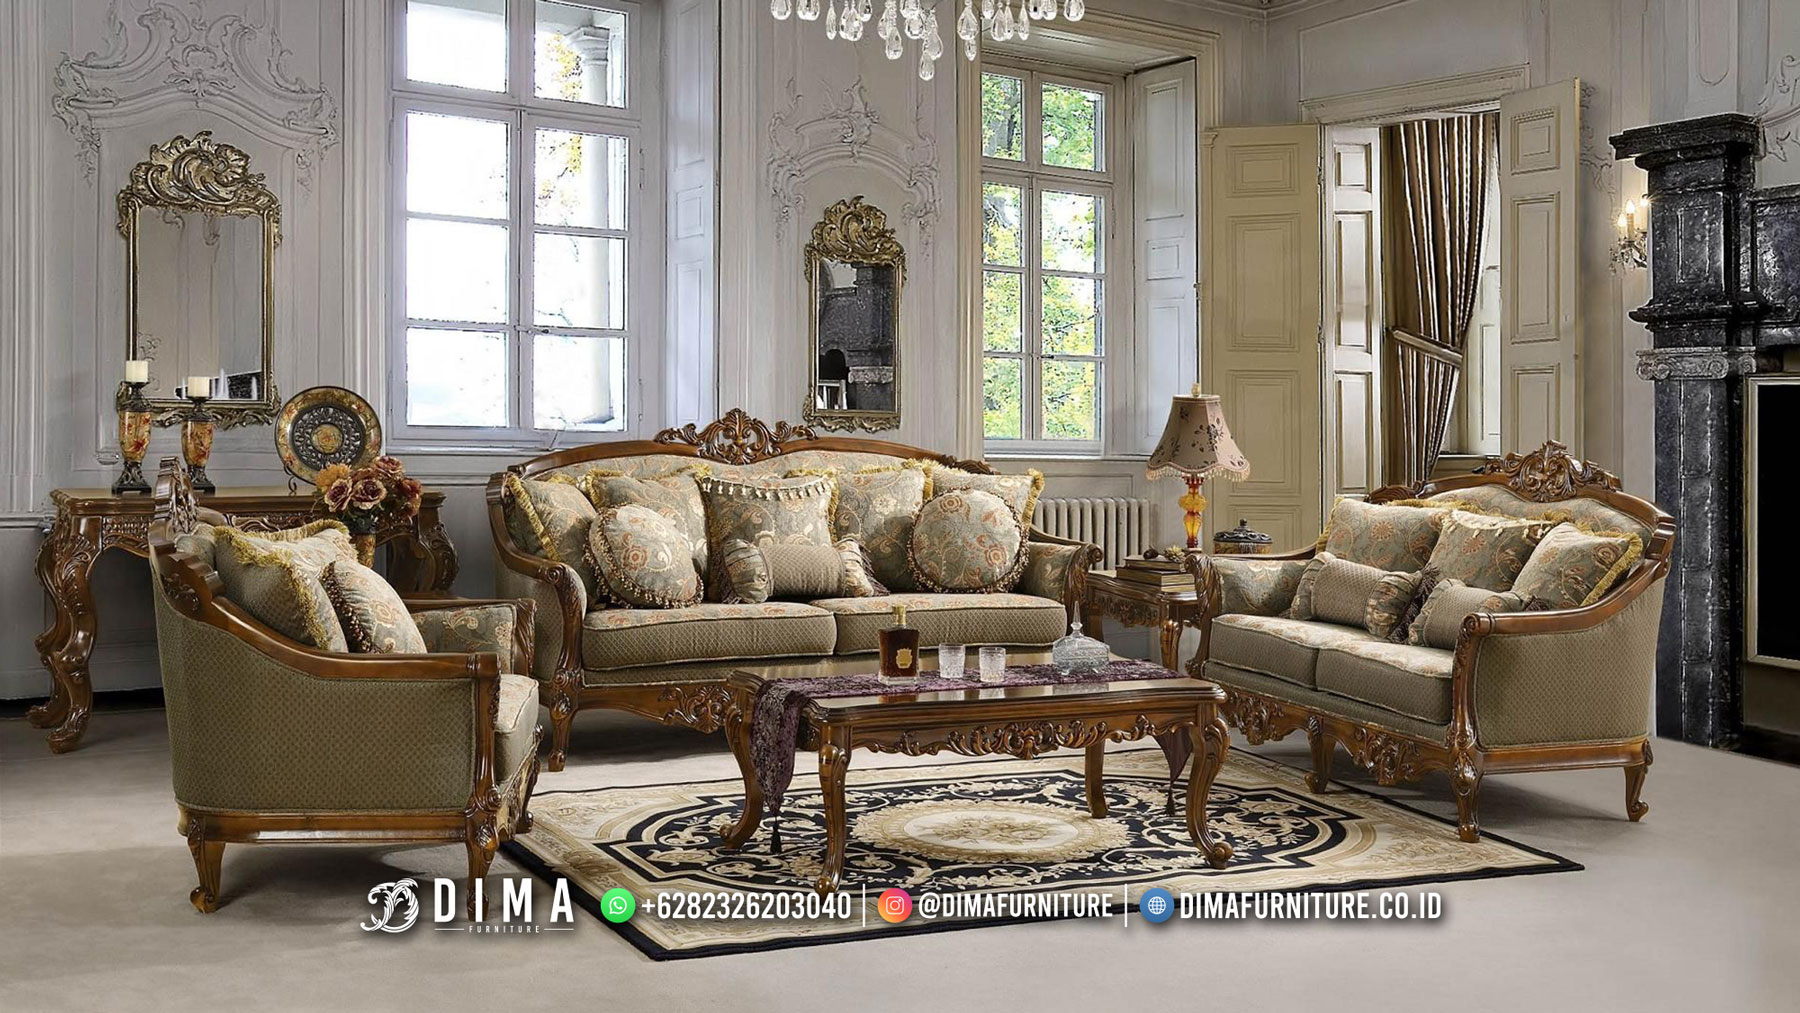 Classic Desain Sofa Tamu Mewah Ukir Jati Belvina Best Style BM540